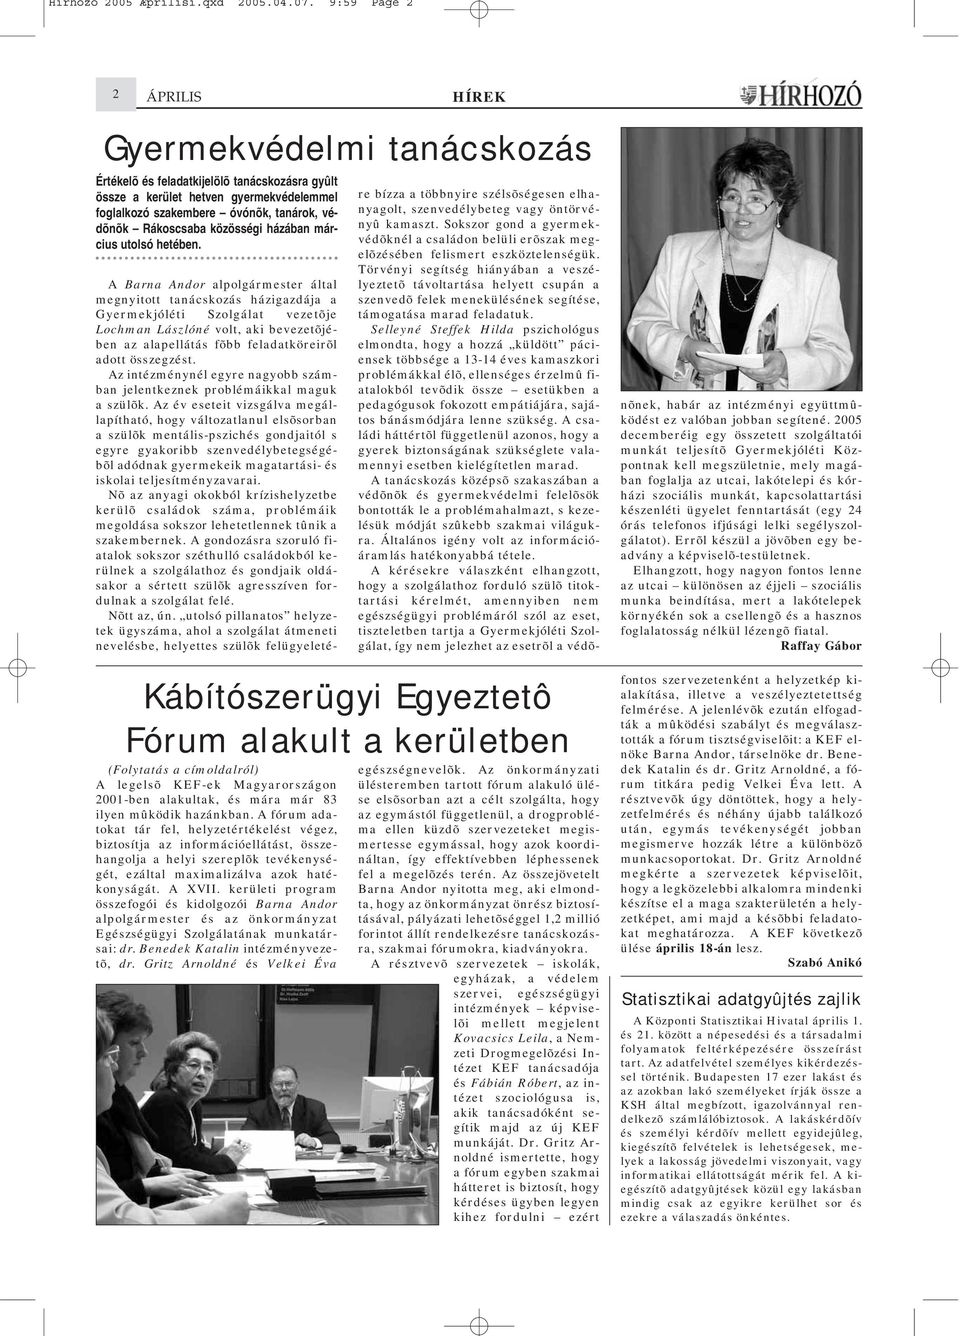 Rákoscsaba közösségi házában március utolsó hetében. (Folytatás a címoldalról) A legelsõ KEF-ek Magyarországon 2001-ben alakultak, és mára már 83 ilyen mûködik hazánkban.